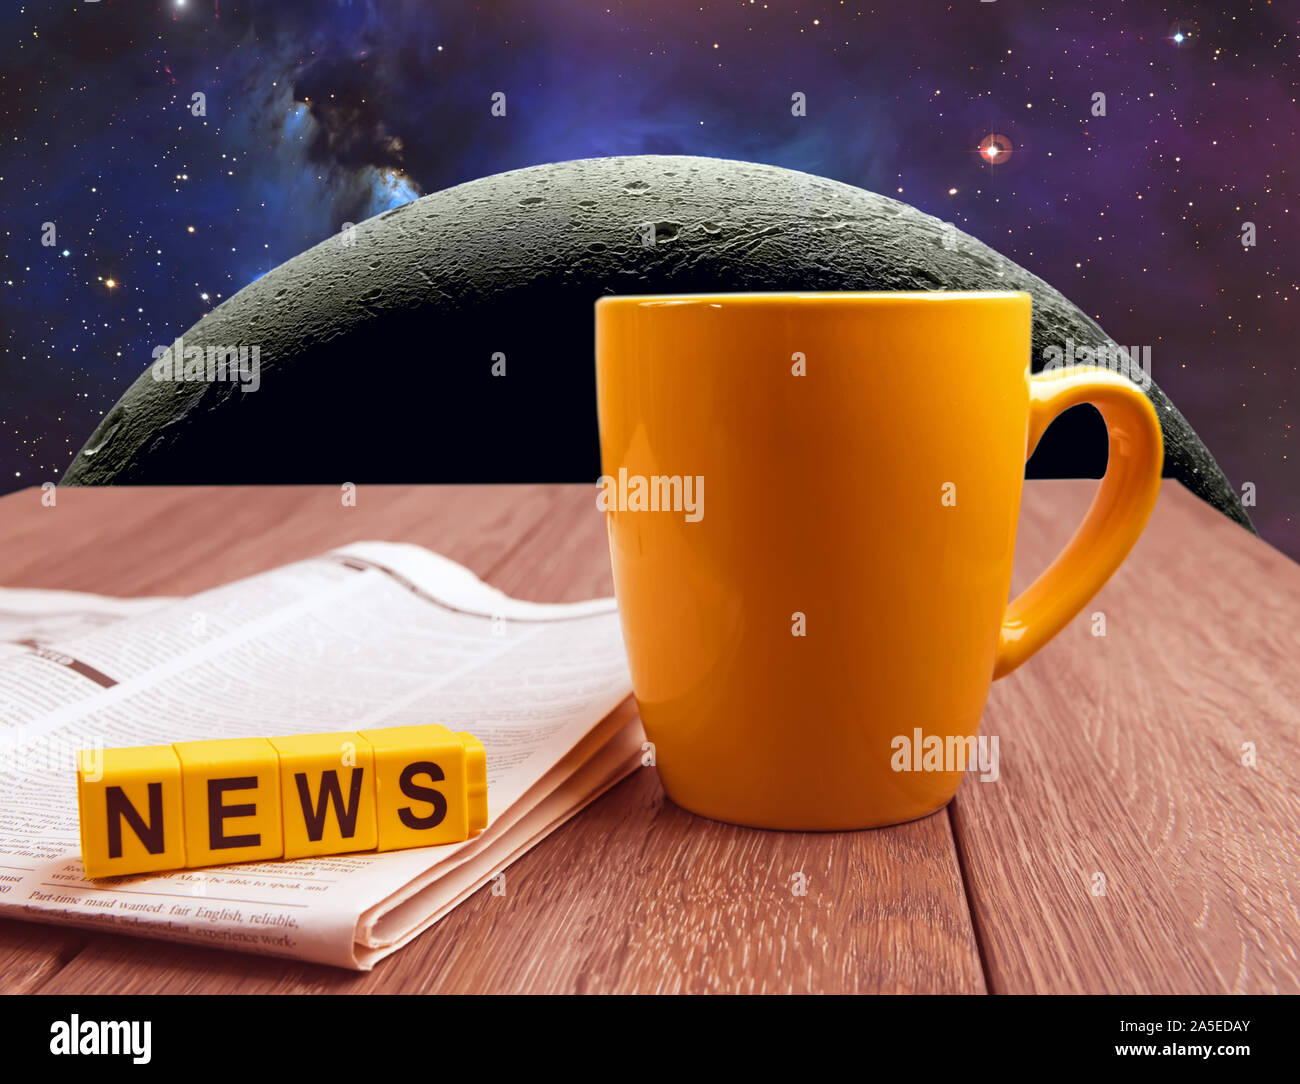 Spazio di viaggio luna news collage immagine. La tazza di caffè e un giornale sul tavolo di legno a sfondo spazio Foto Stock